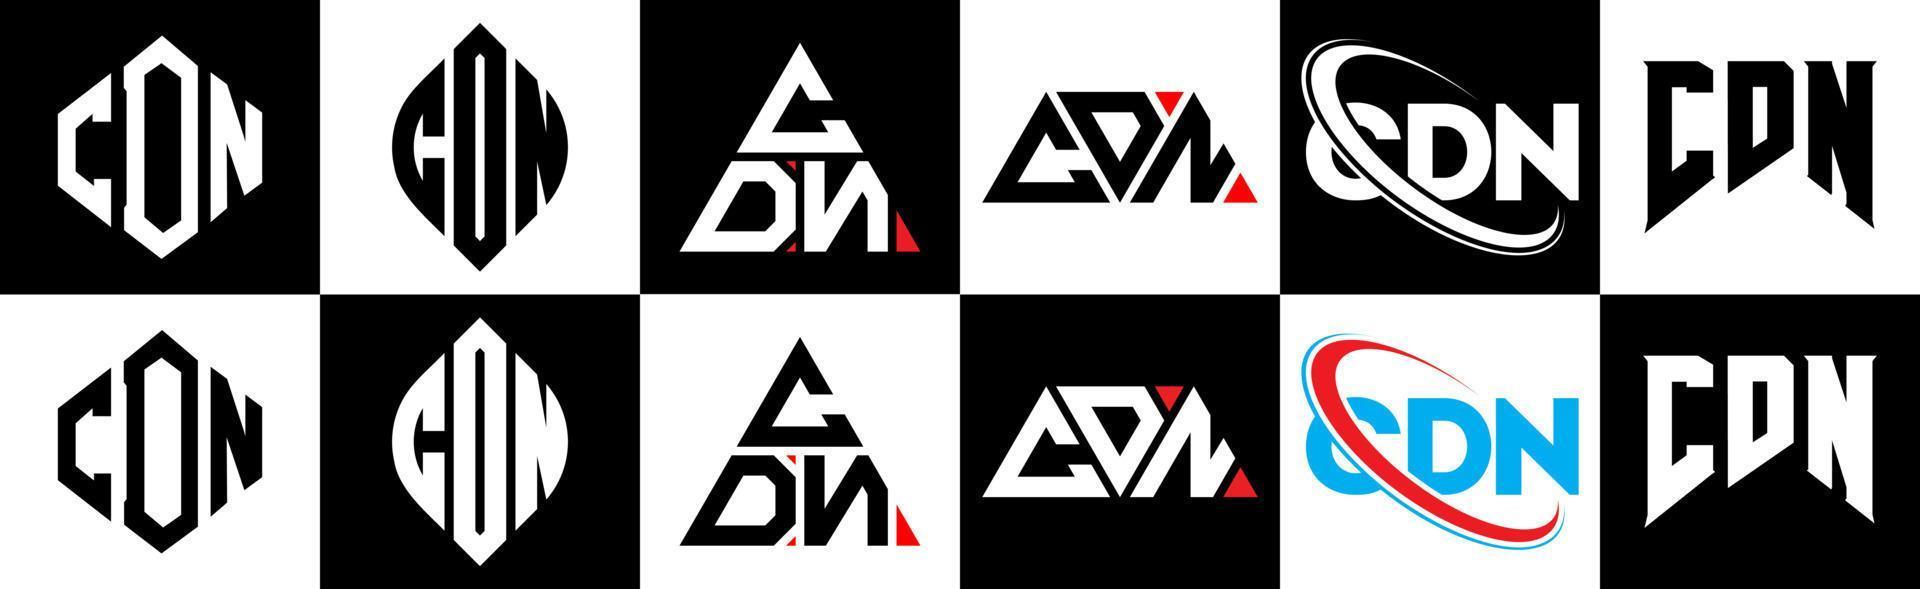 création de logo de lettre cdn en six styles. polygone cdn, cercle, triangle, hexagone, style plat et simple avec logo de lettre de variation de couleur noir et blanc dans un plan de travail. logo cdn minimaliste et classique vecteur